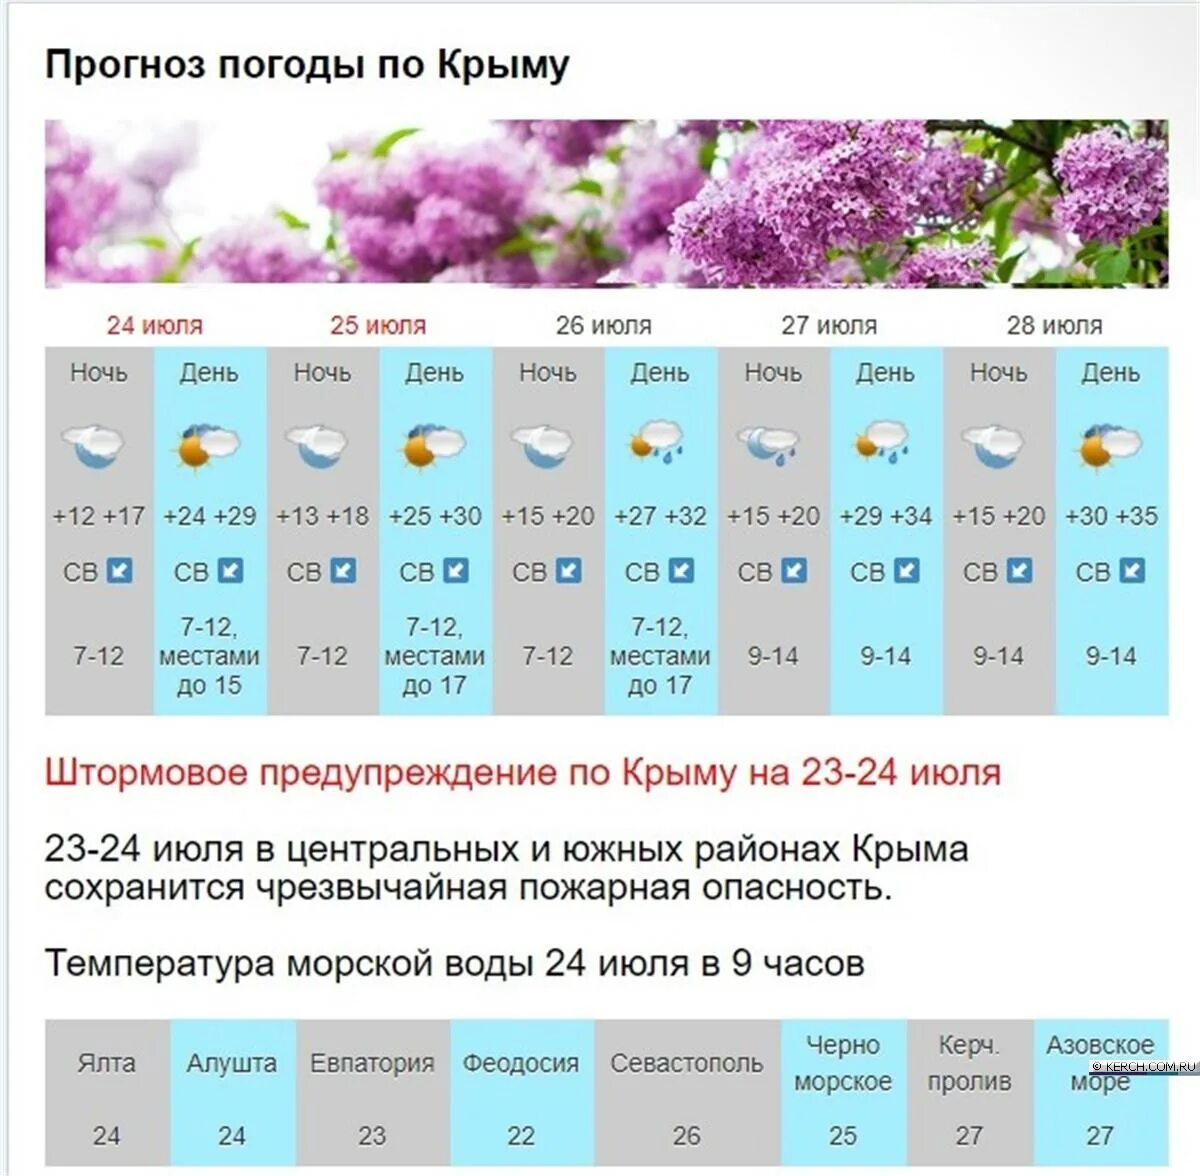 Осадки на 5 дней. Погода в Крыму. Погода в Крыму сейчас. Какая температура в Крыму сейчас. Климат Крыма температура.